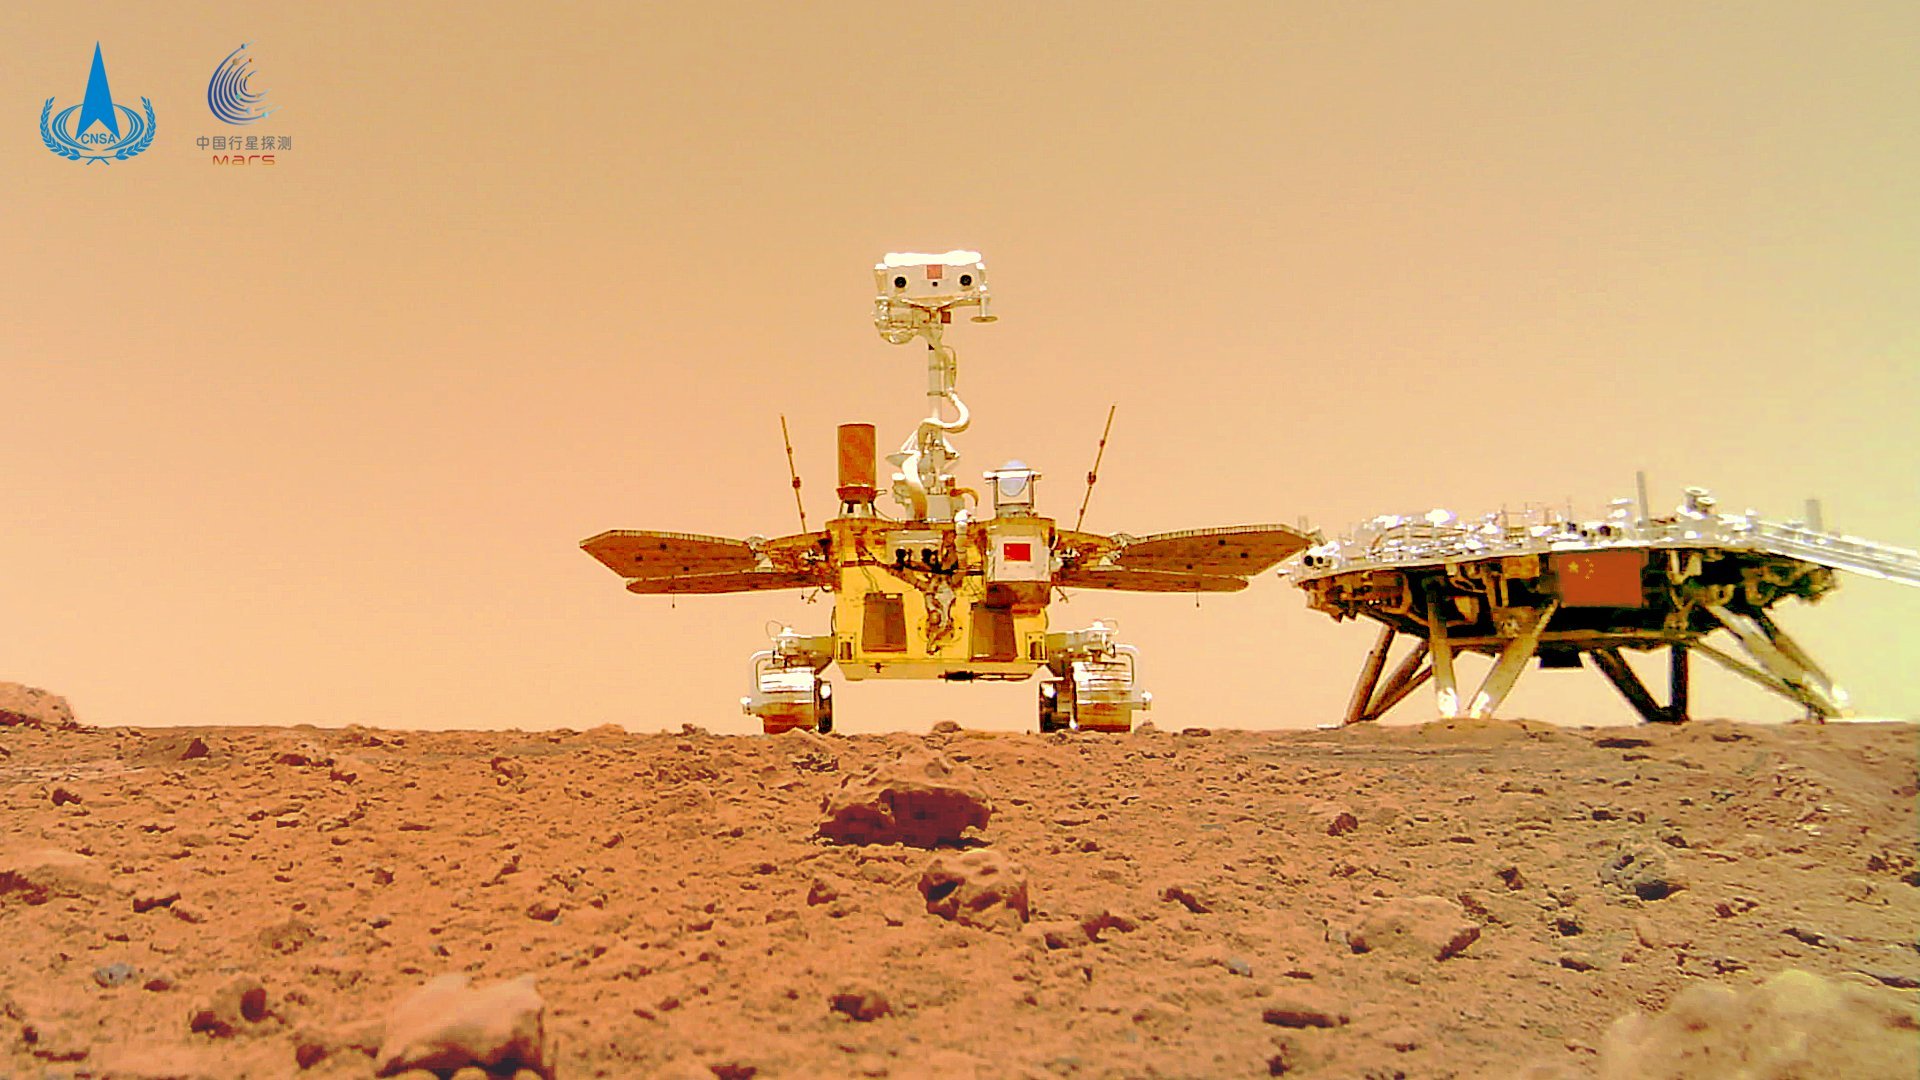 Selfie du rover Zhurong lors de ses premiers tours de roues sur Mars. Le rover a parcouru près de 1 900 mètres depuis. © CLEP/CNSA